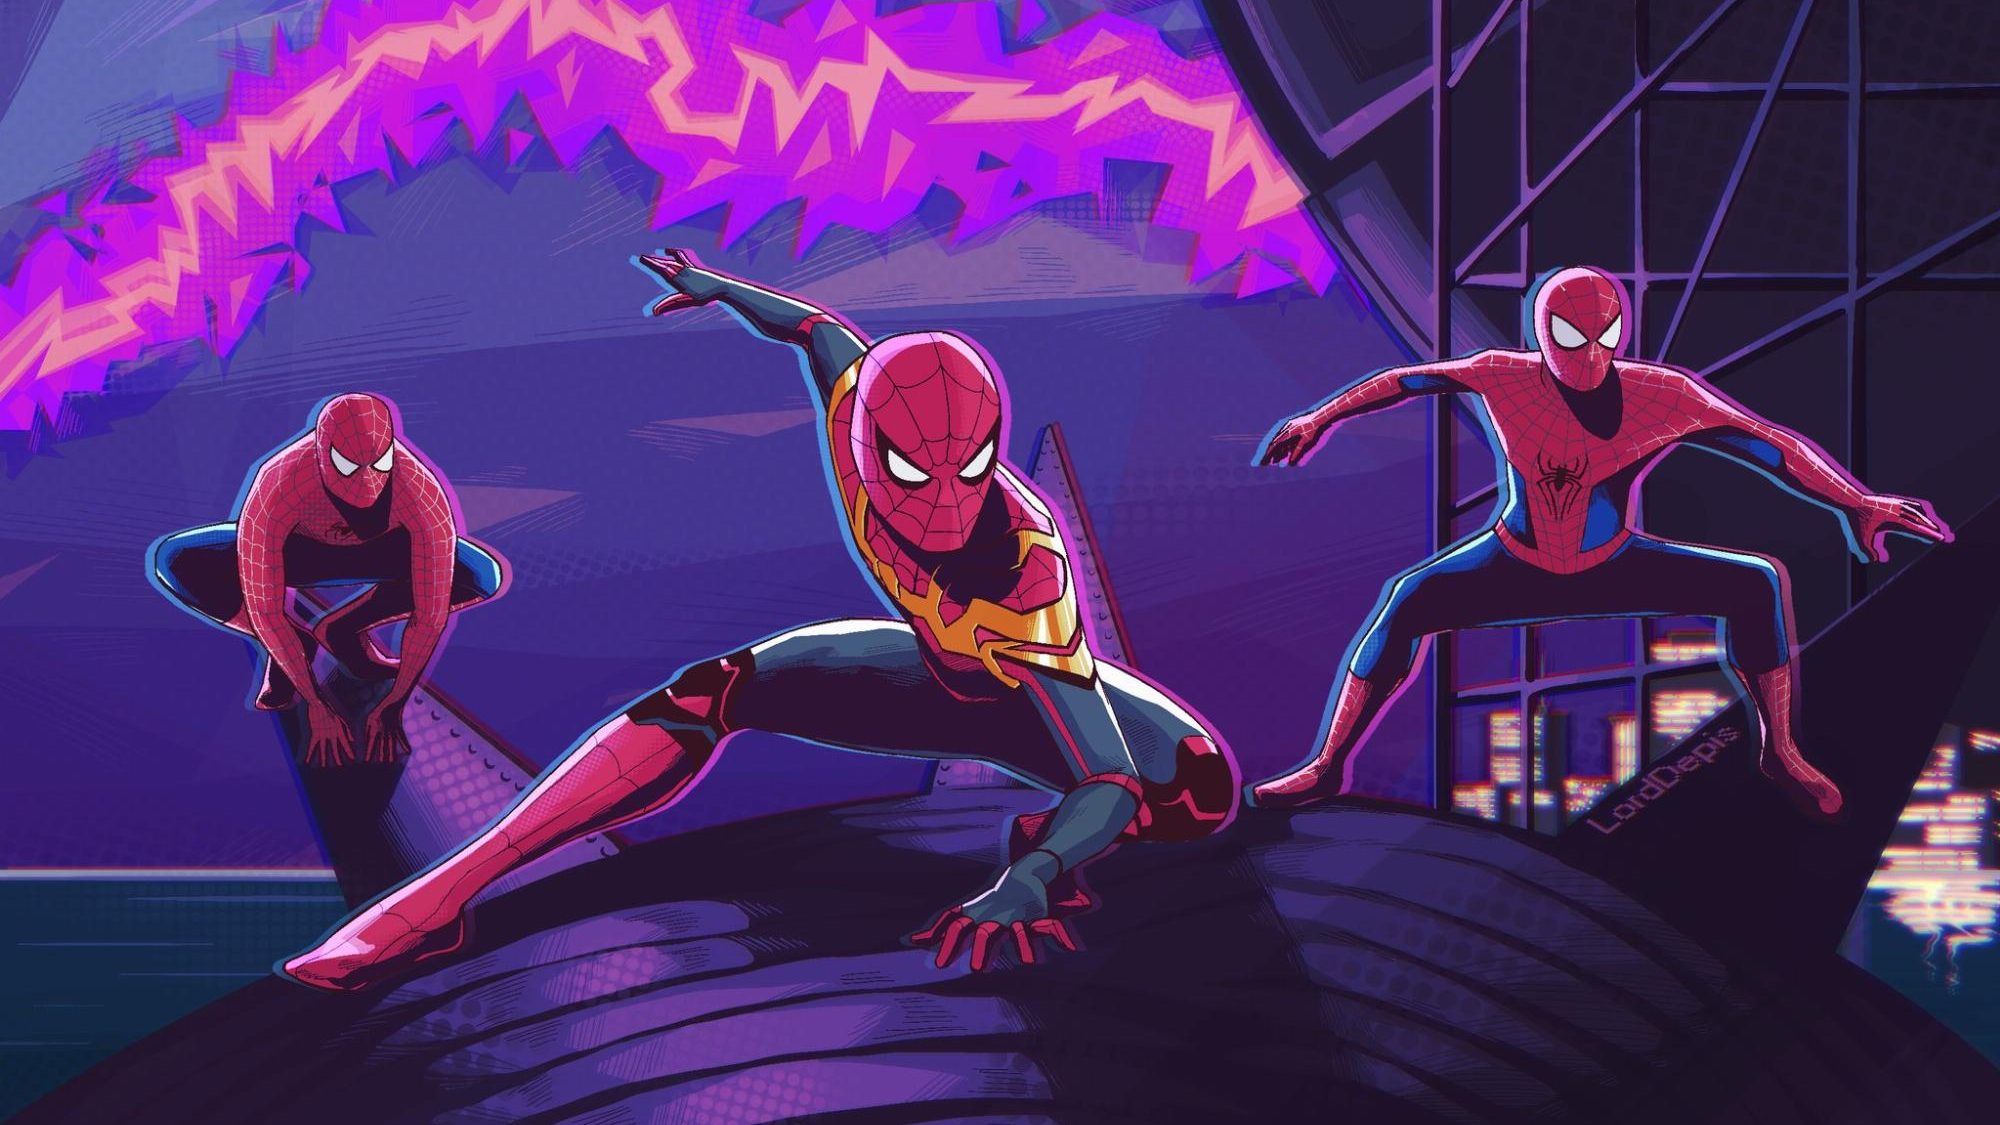 Spider Man: No Way Home - điều mà các fan hâm mộ Người Nhện đã chờ đợi từ lâu. Hãy xem hình để cảm nhận được sự tái ngộ của Người Nhện với đầy lên kịch tính!